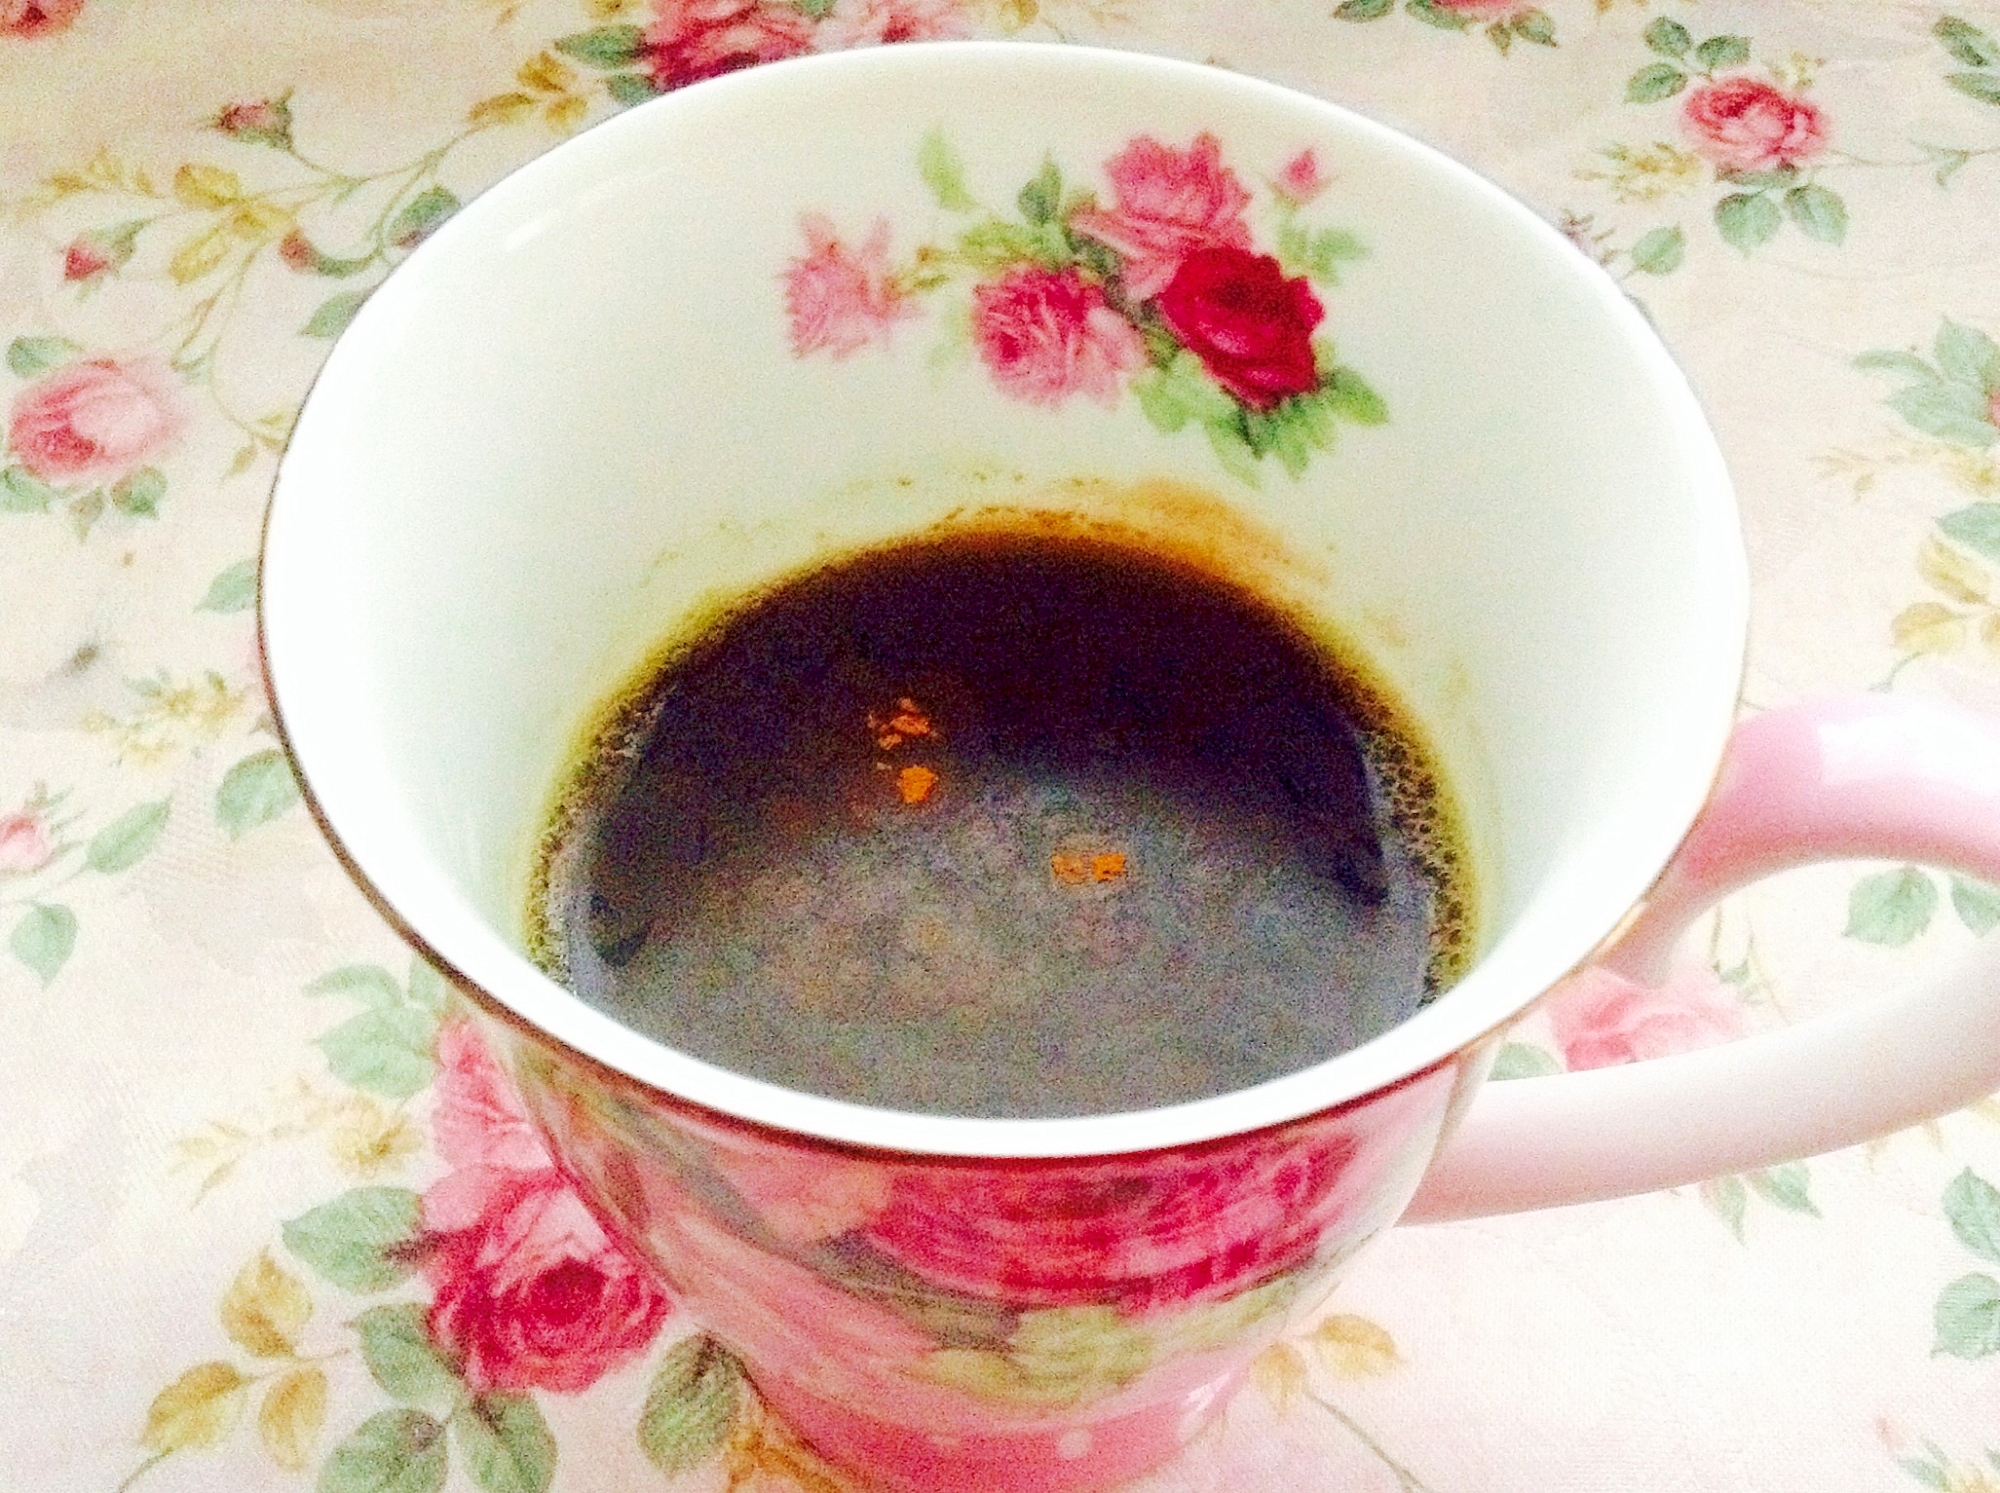 青汁を美味しく♡美的♡きな粉シナモンコーヒー